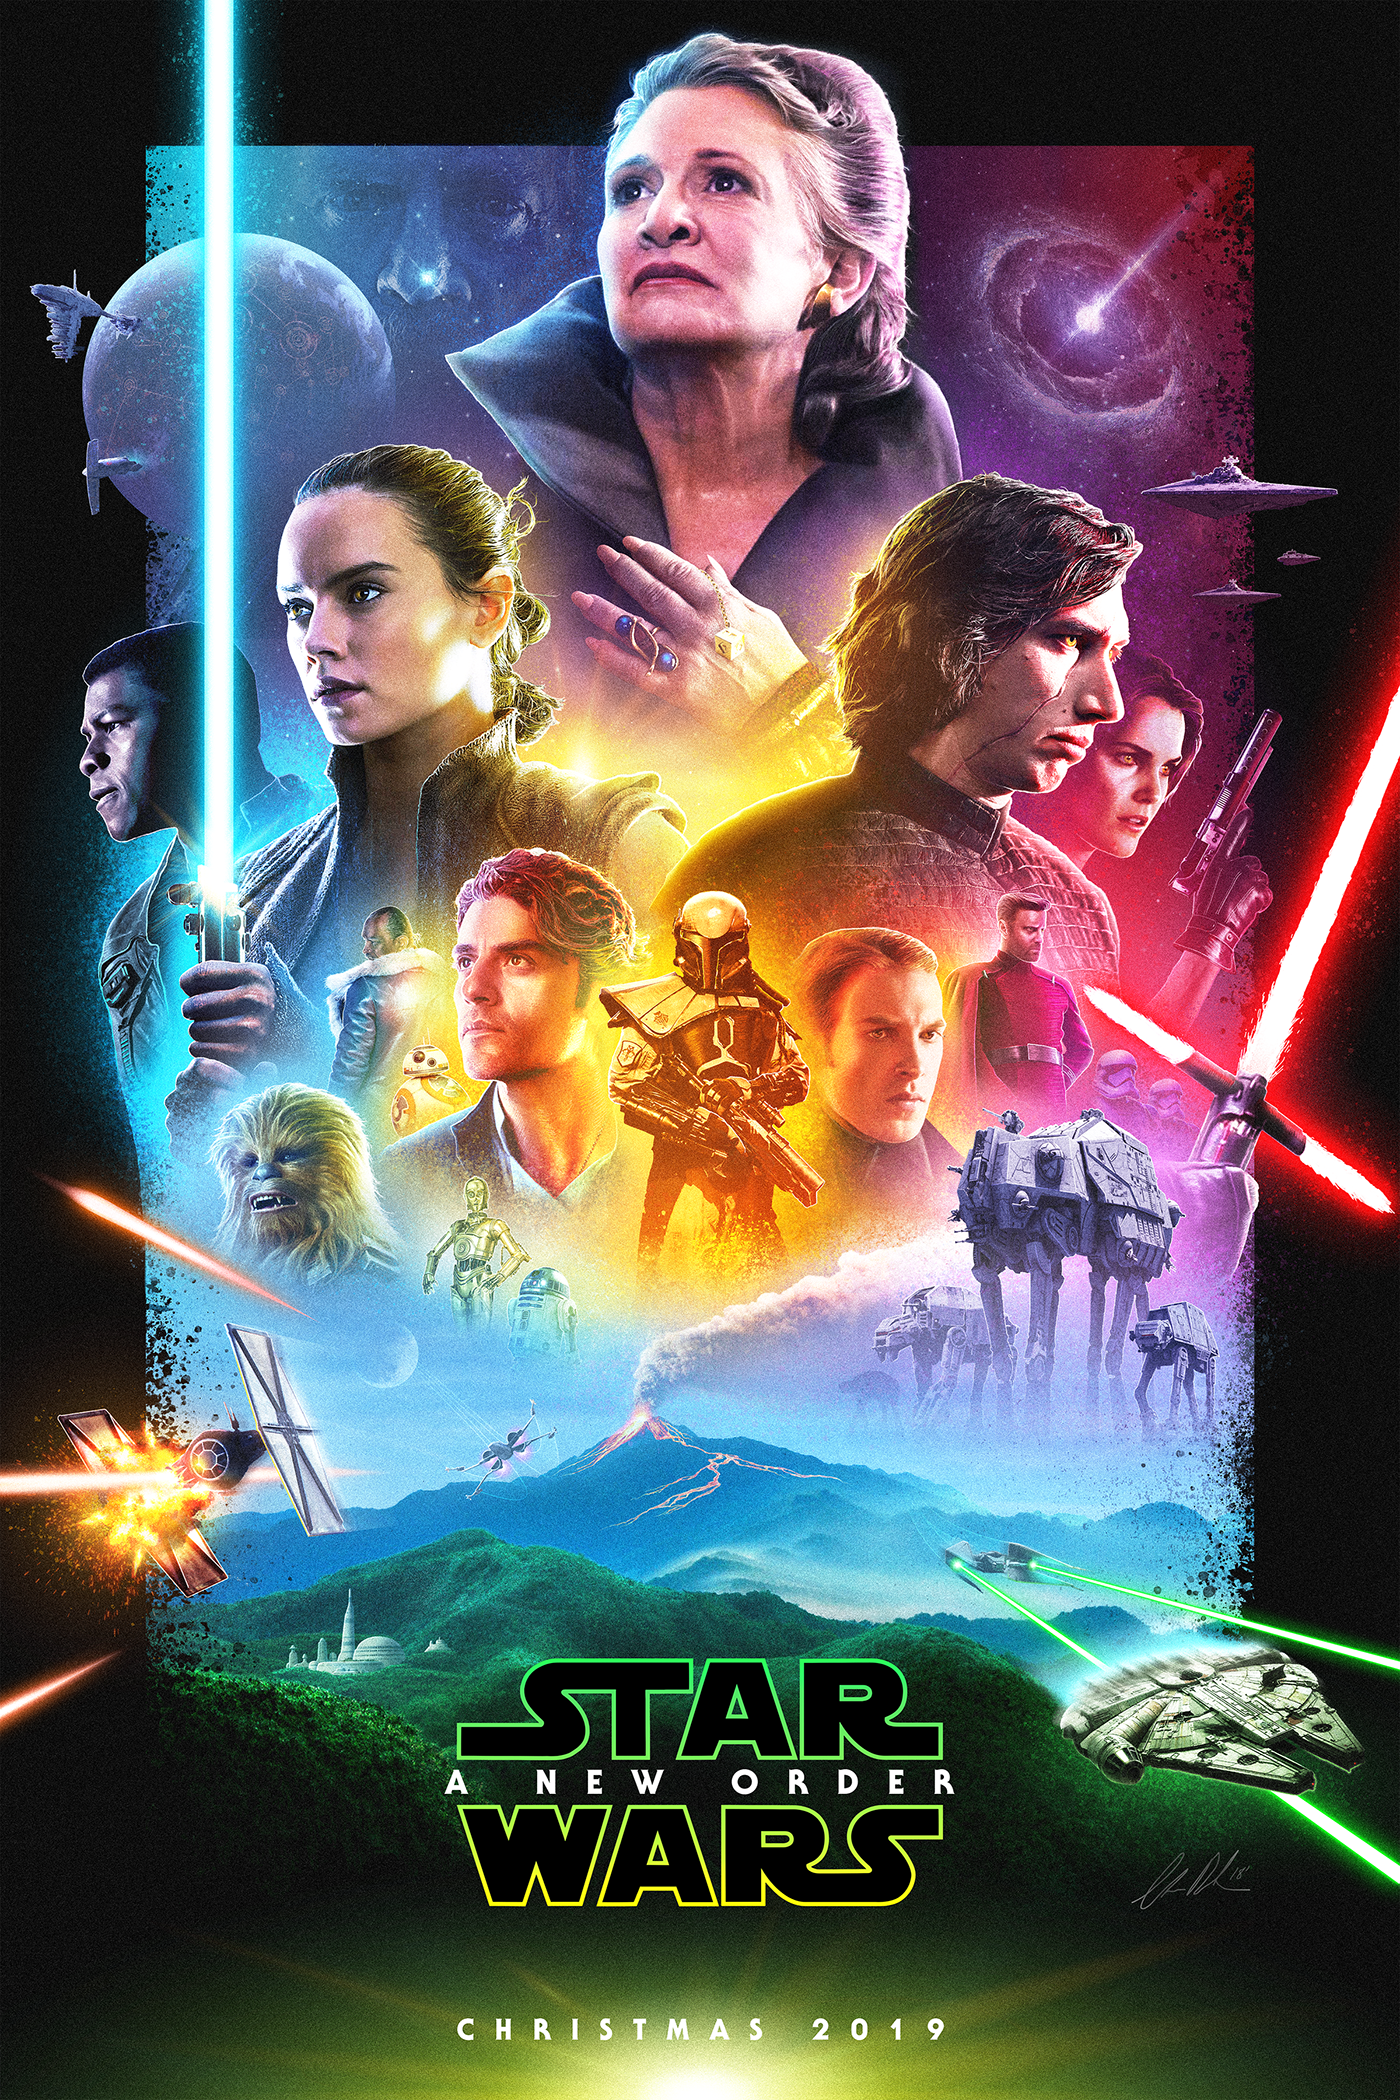 Star Wars Episode 9 mockup poster